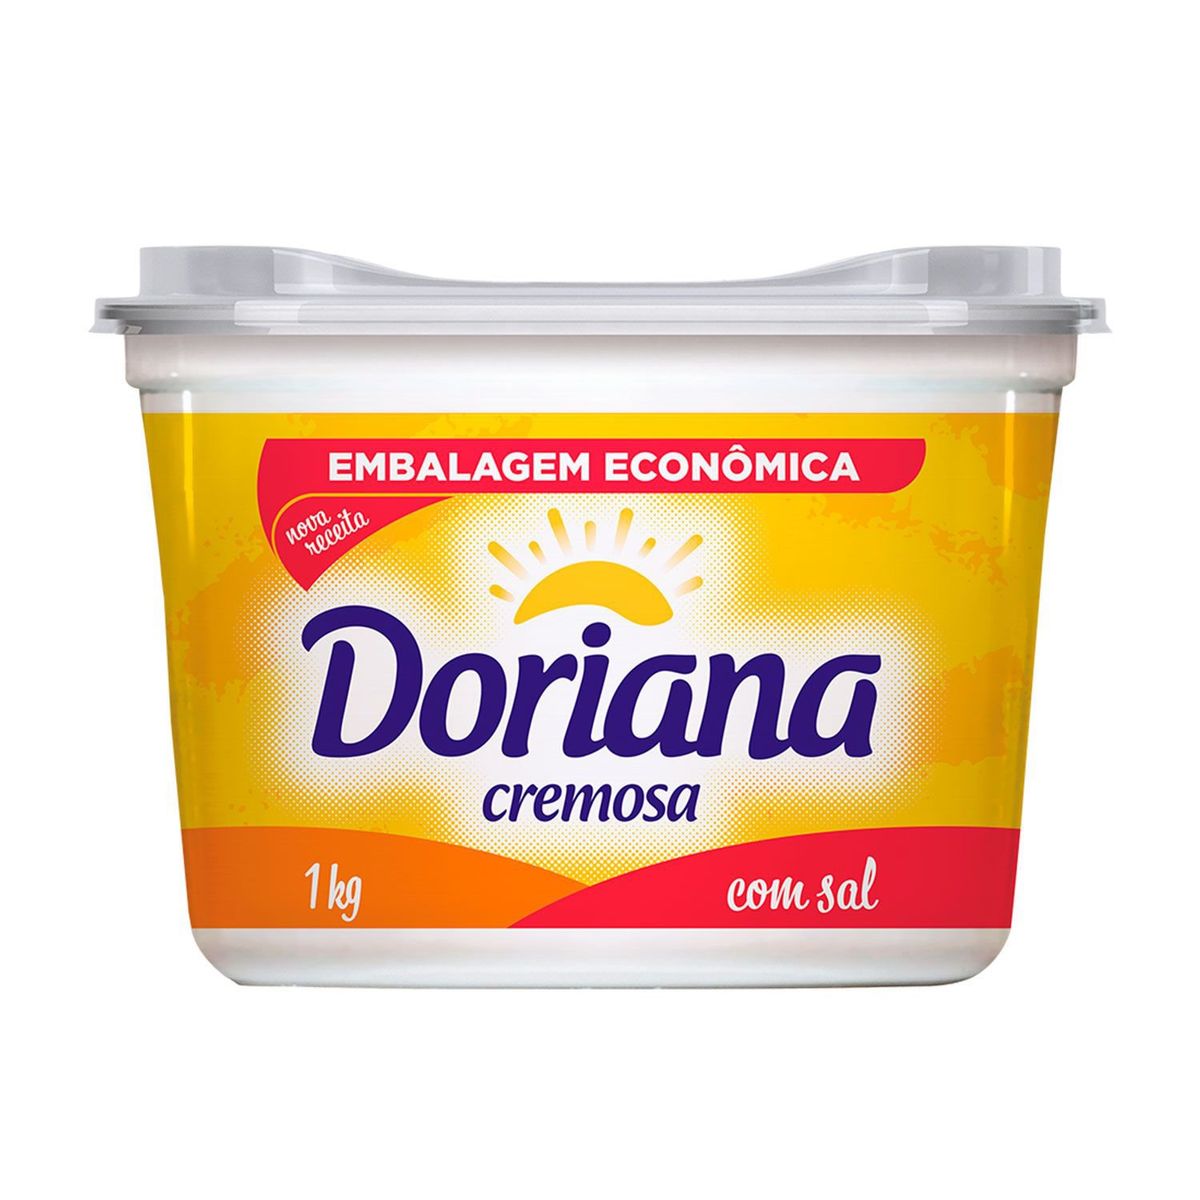 Margarina Cremosa Doriana 1kg Embalagem Econômica image number 0